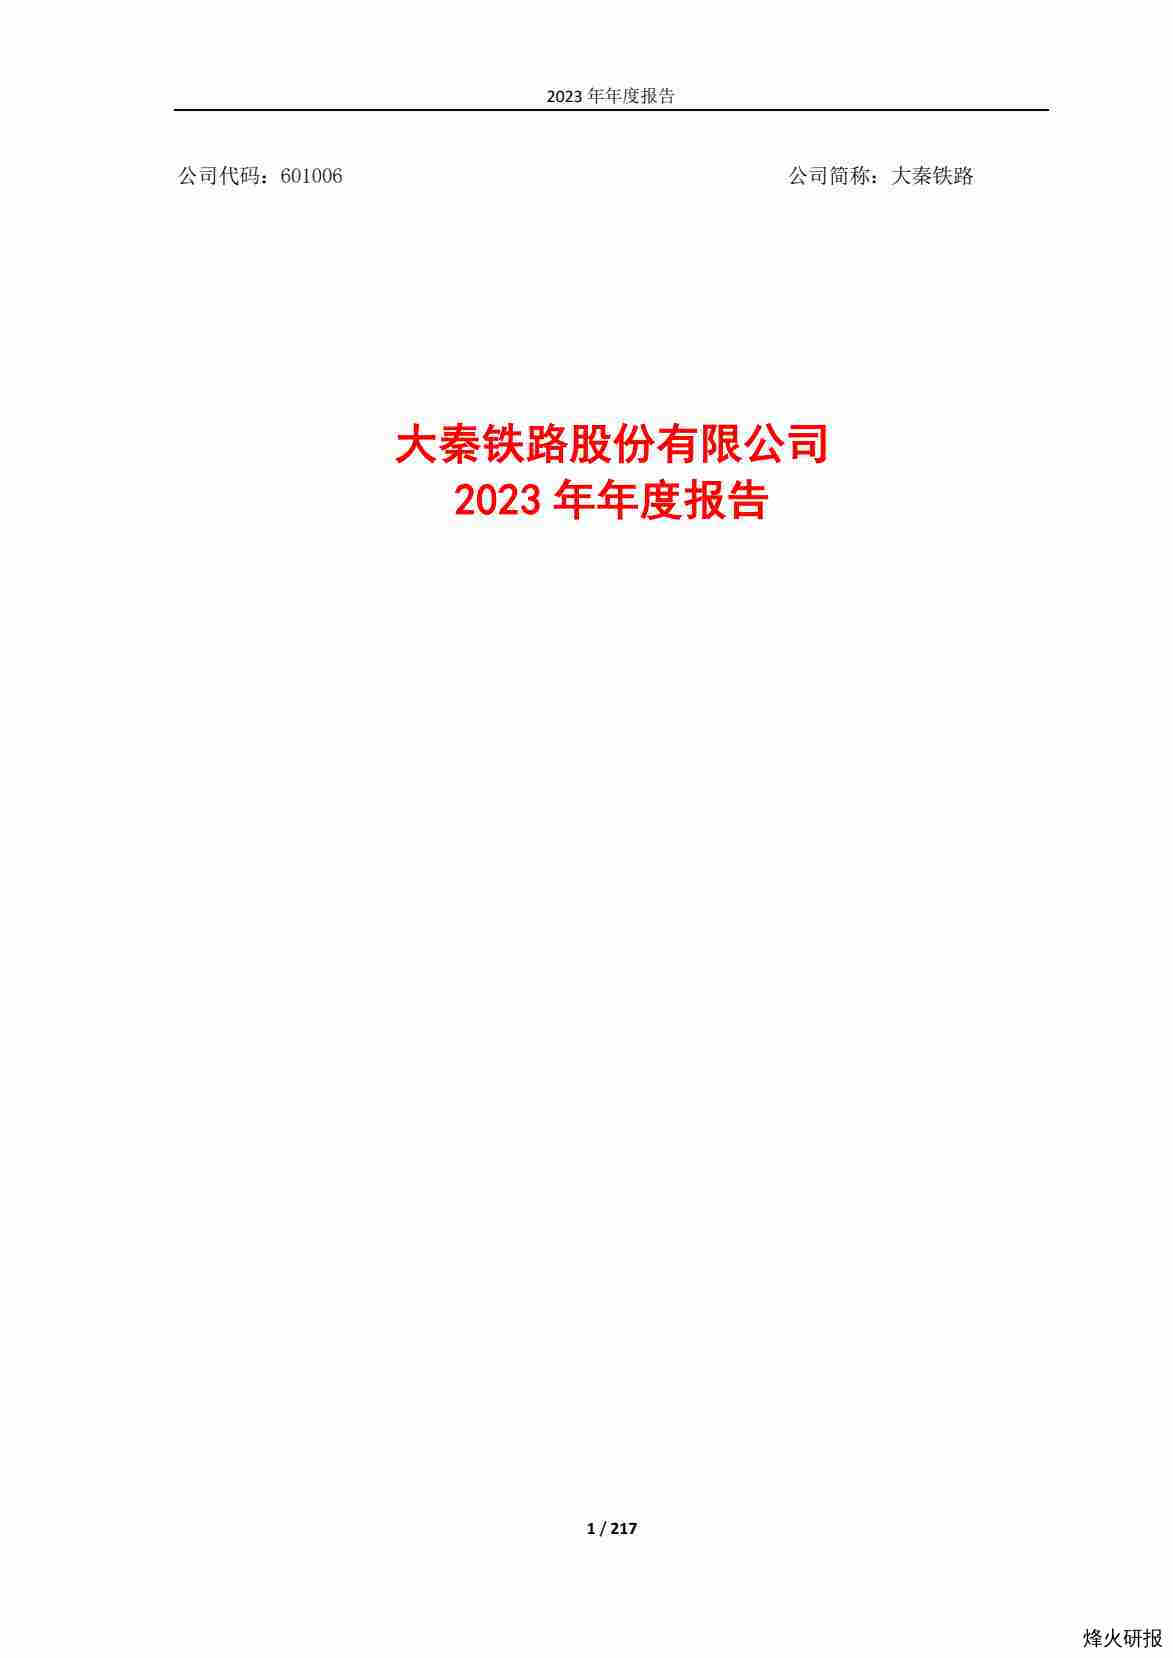 【财报】大秦铁路：大秦铁路2023年年度报告.pdf-第一页